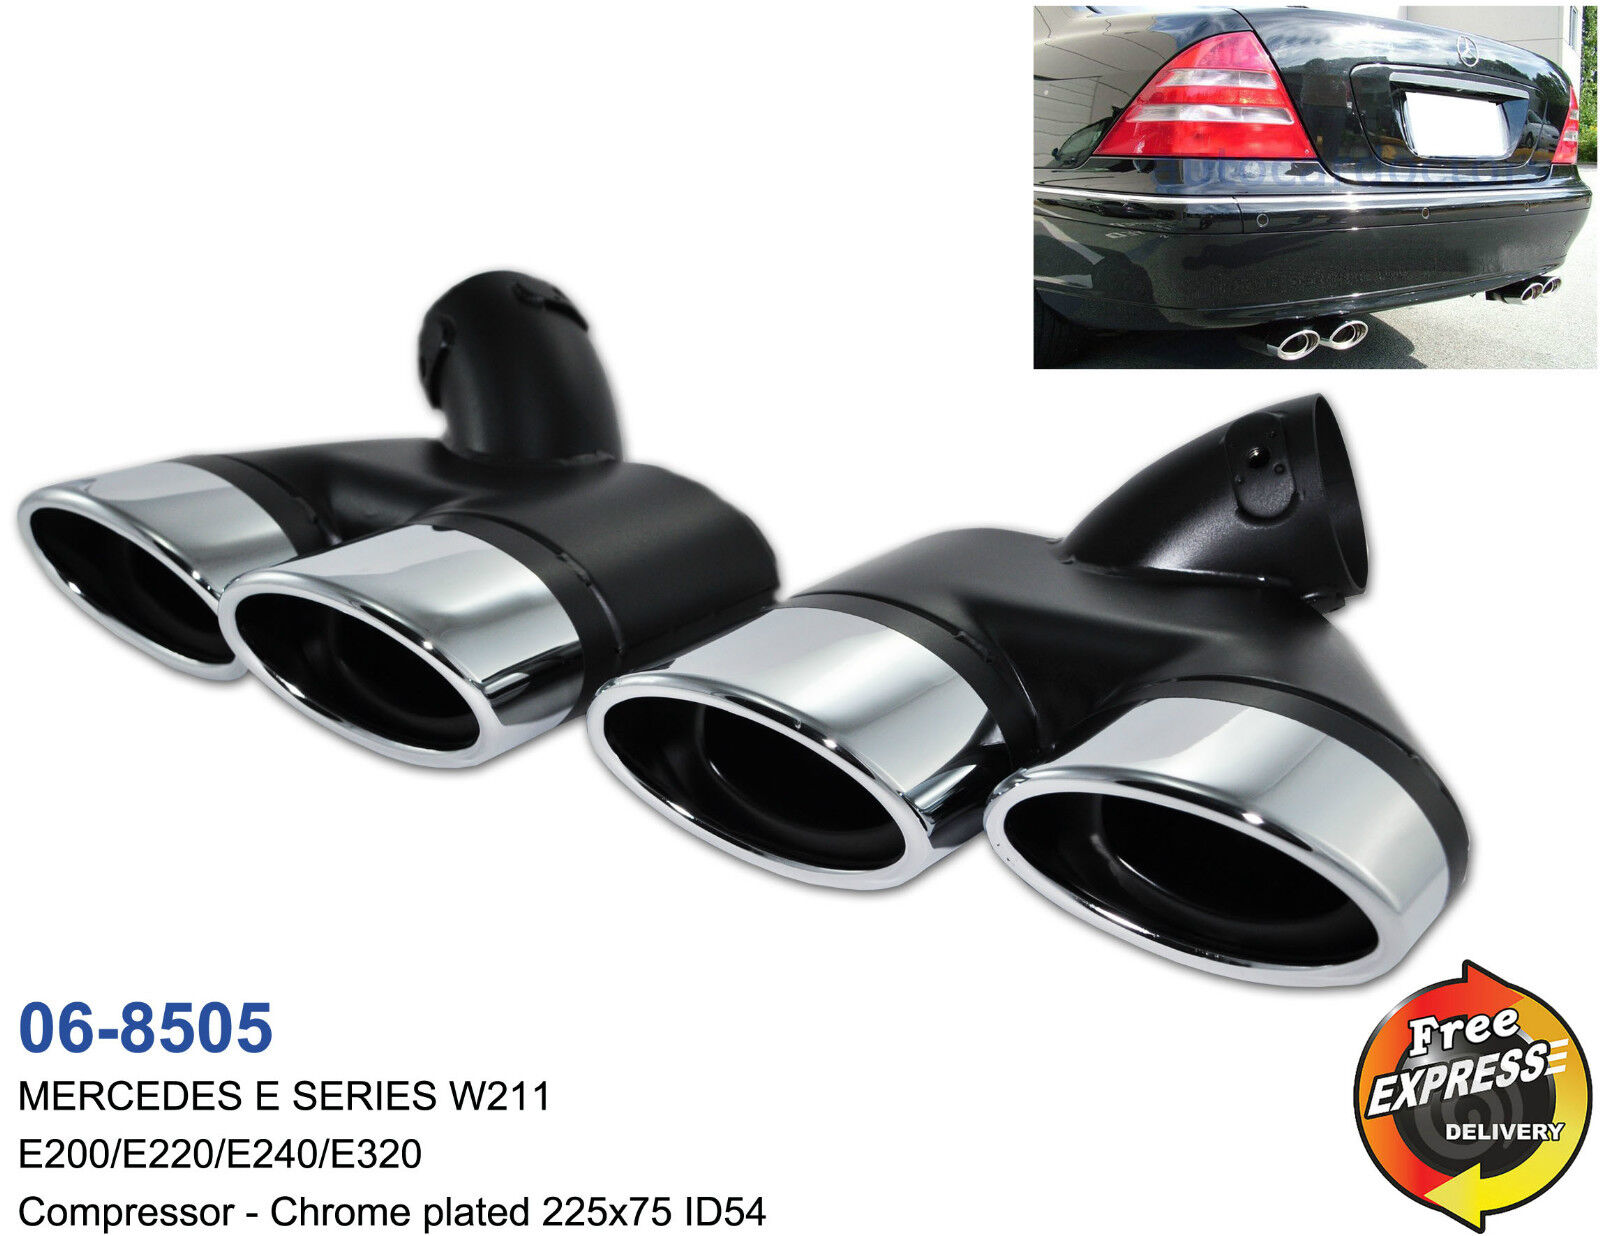 Exhaust tips tailpipe trims for Mercedes Benz W211 E200 E220 E240 E320 / 06-8505